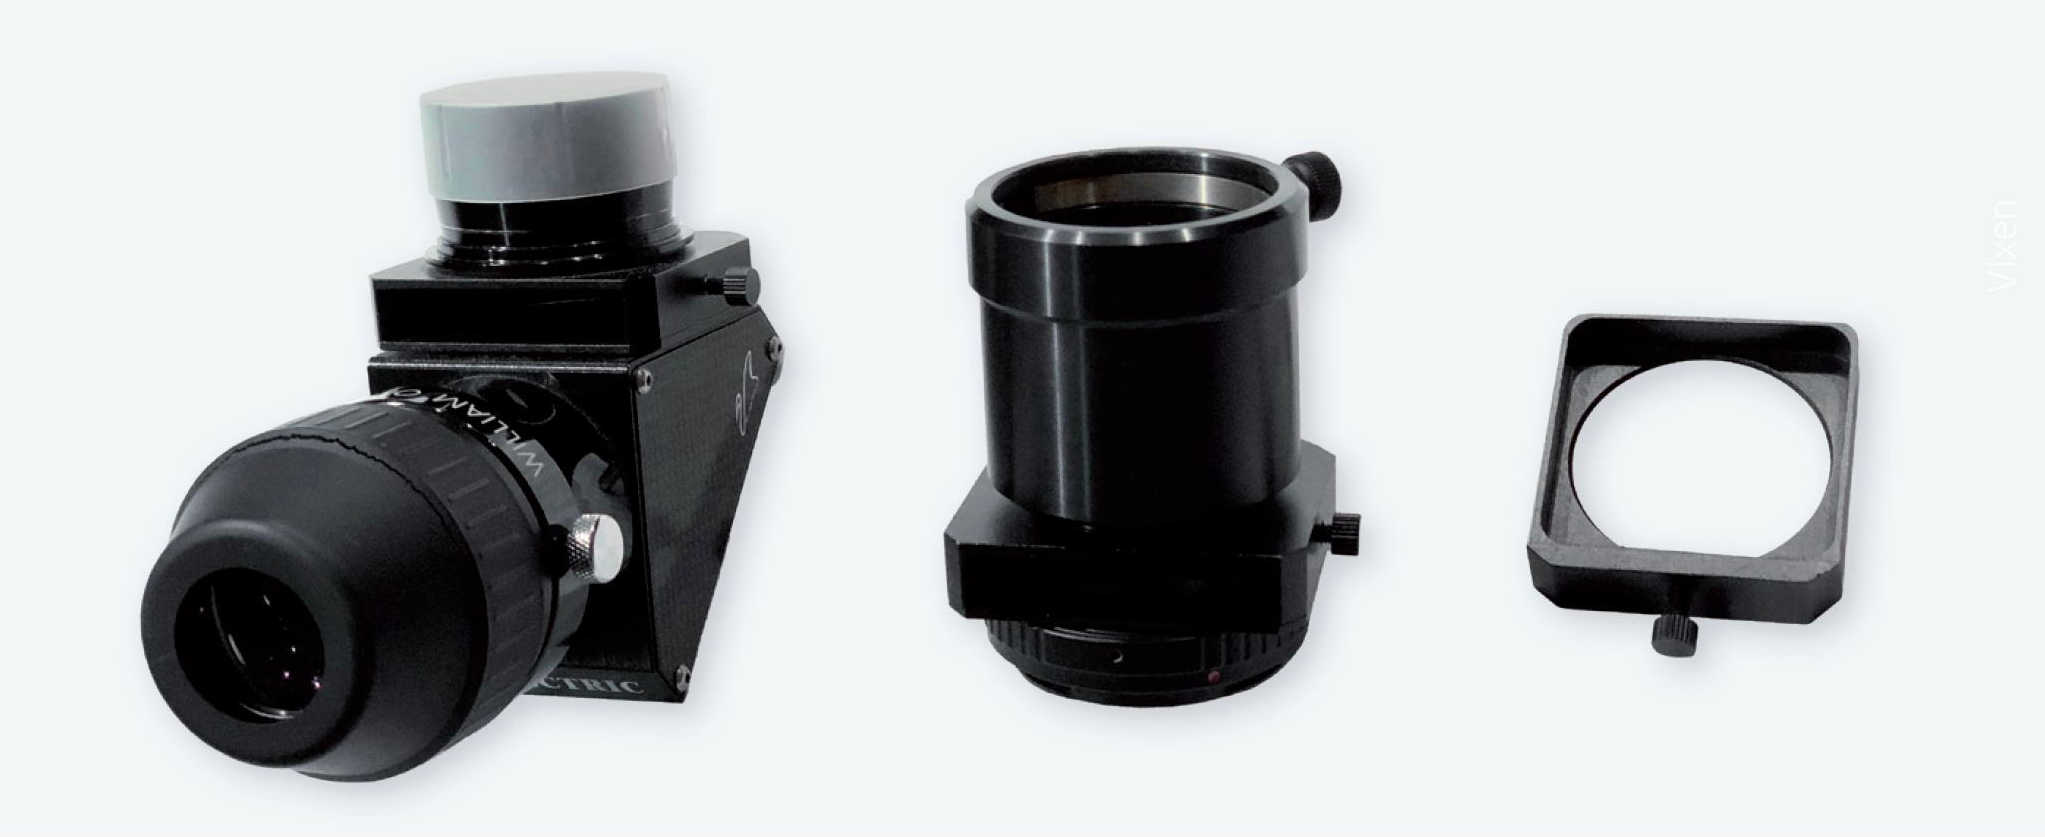 Gavetas de filtro instaladas num prisma Zenit e um adaptador Canon EOS (as rodas de acionamento servem para travar a gaveta), bem como uma gaveta de filtro propriamente dita (aqui, a roda de acionamento funciona como puxador da gaveta). P. Oden